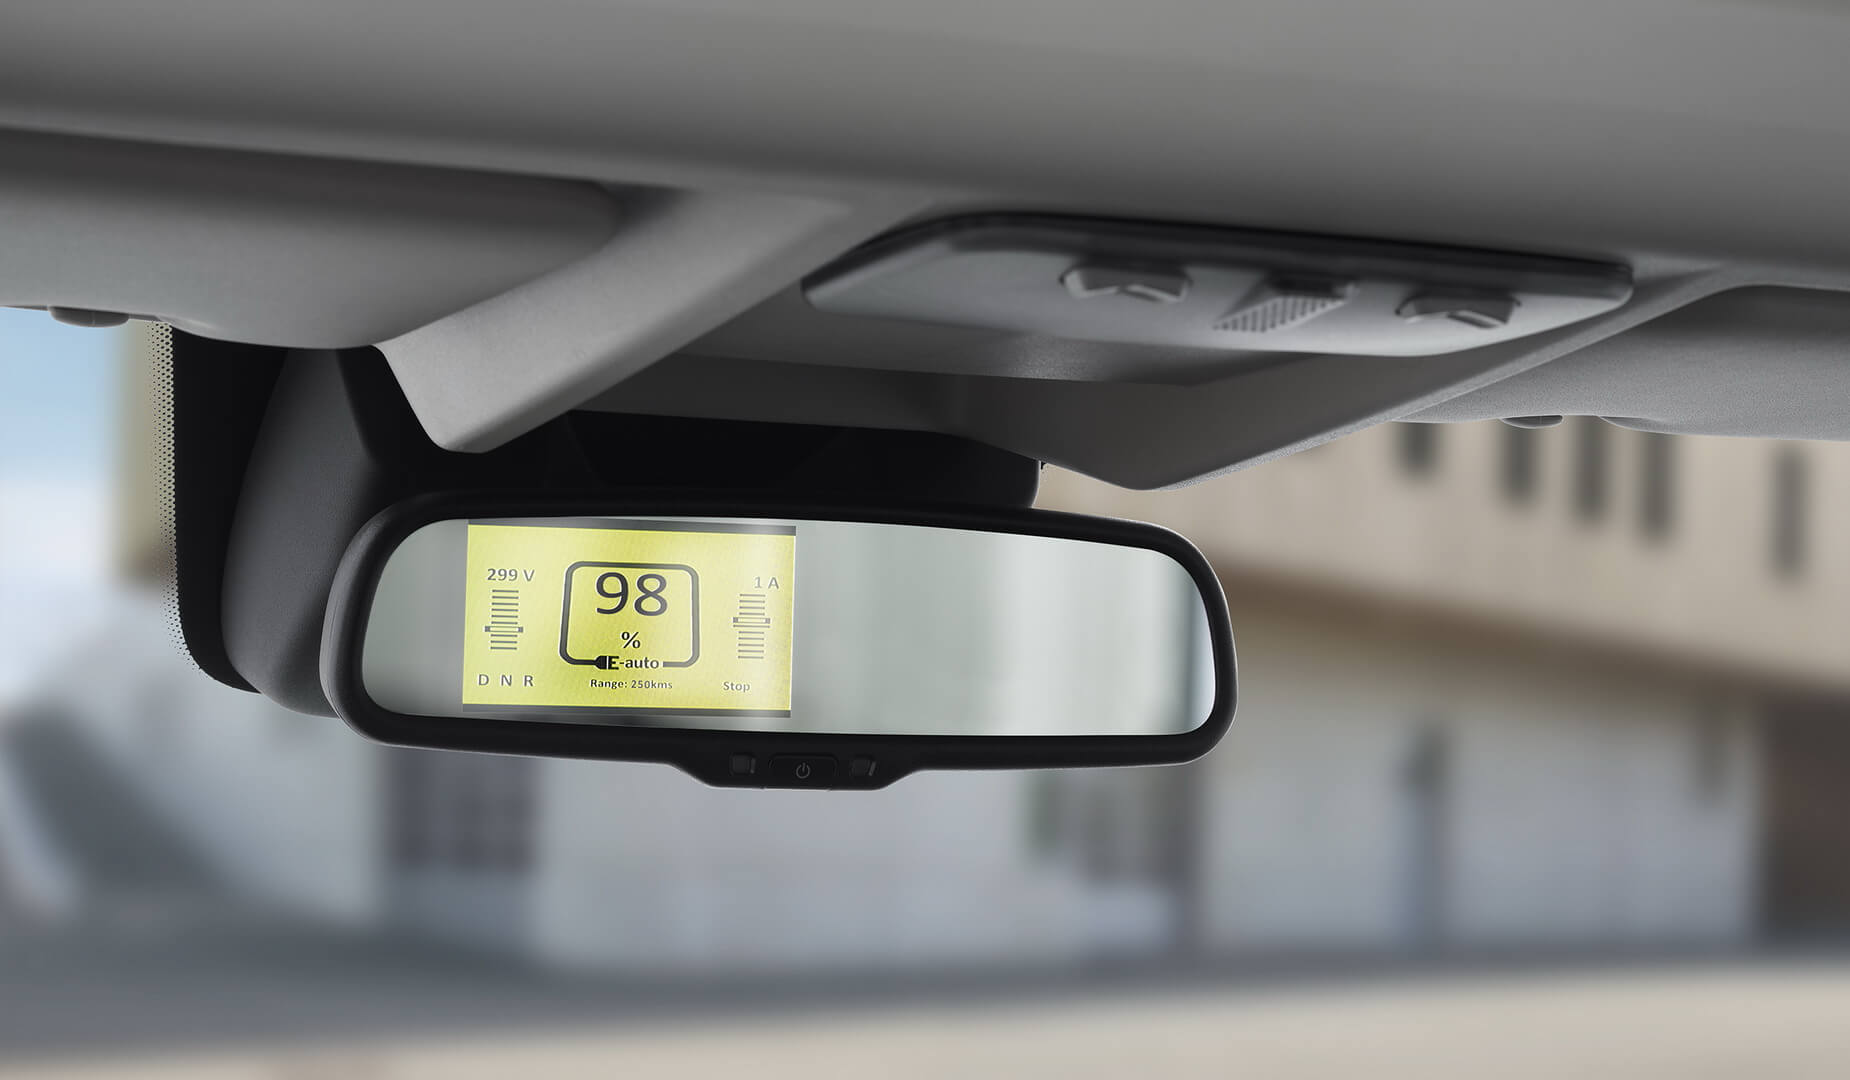 Зеркало заднего вида Peugeot e-Boxer показывает основную информацию о электрических характеристиках фургона